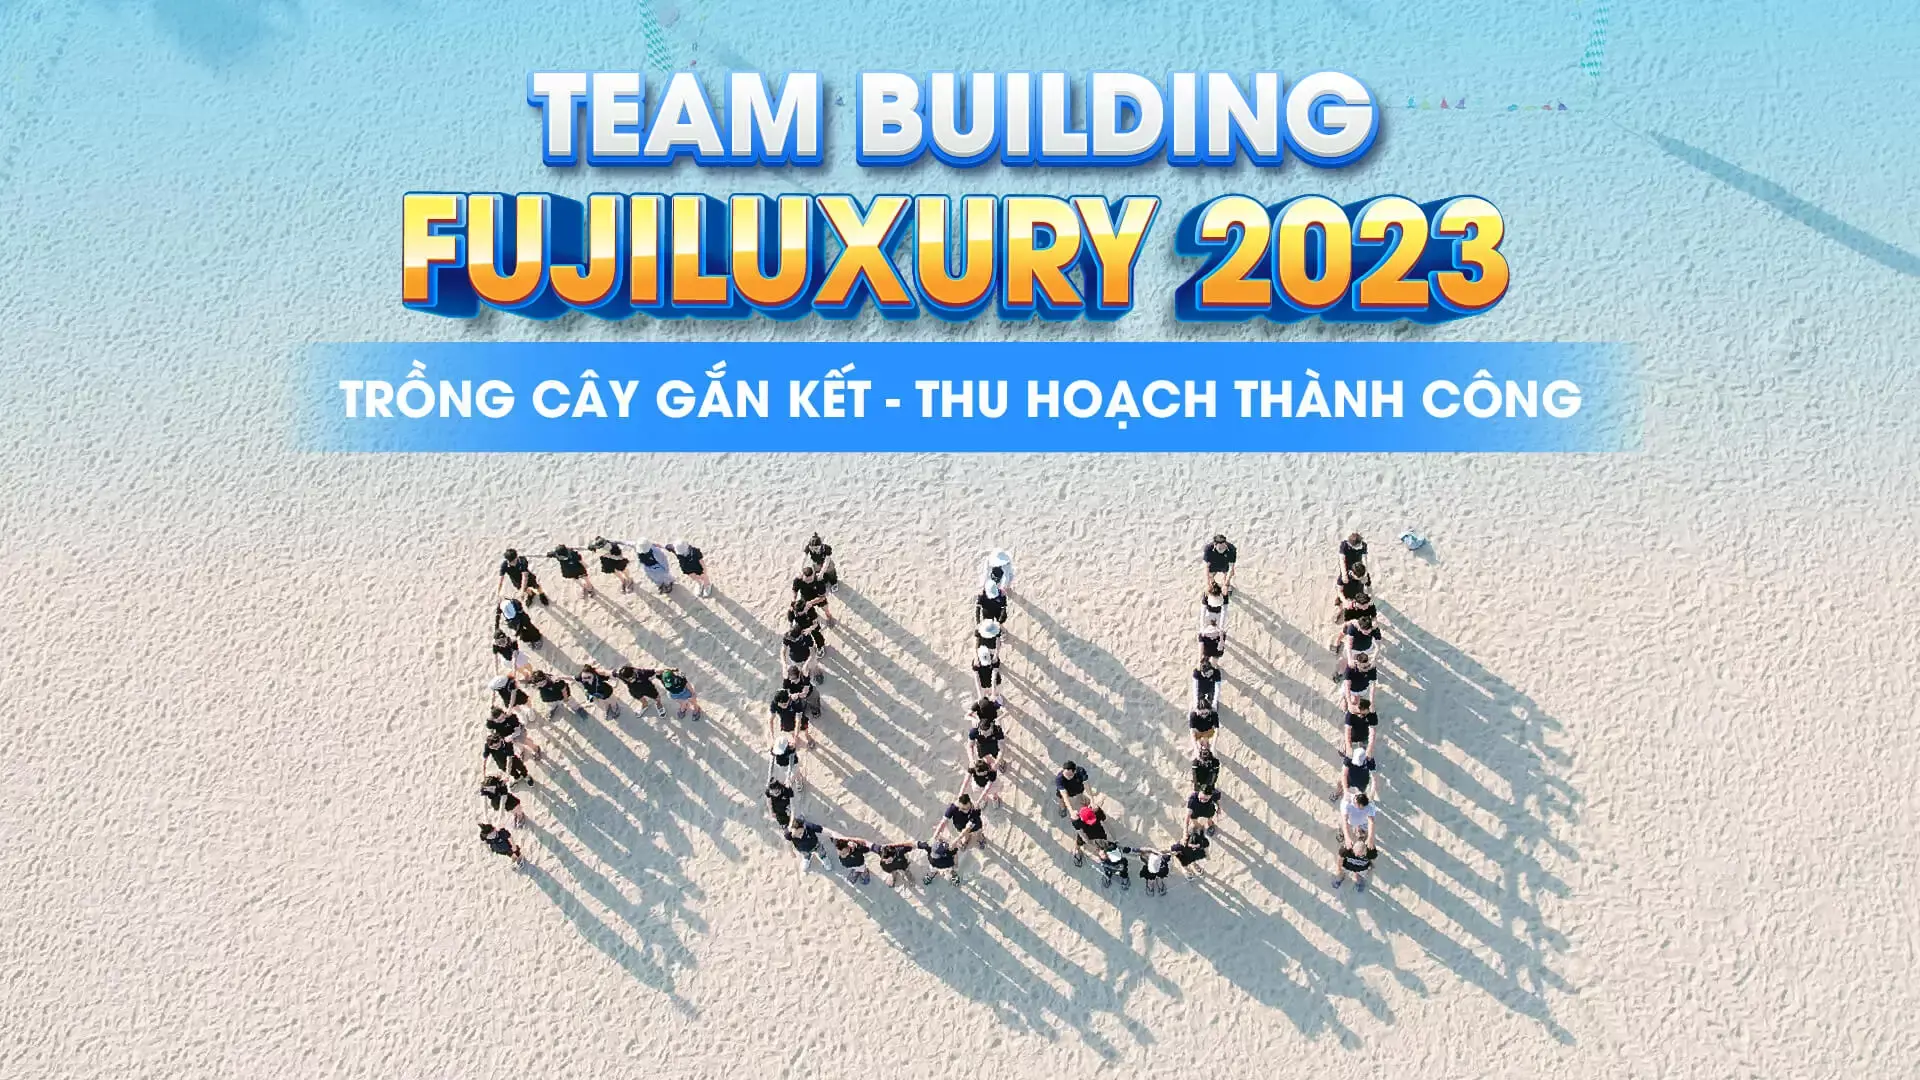 TEAM BUILDING FUJI LUXURY 2023: TRỒNG CÂY GẮN KẾT - THU HOẠCH THÀNH CÔNG